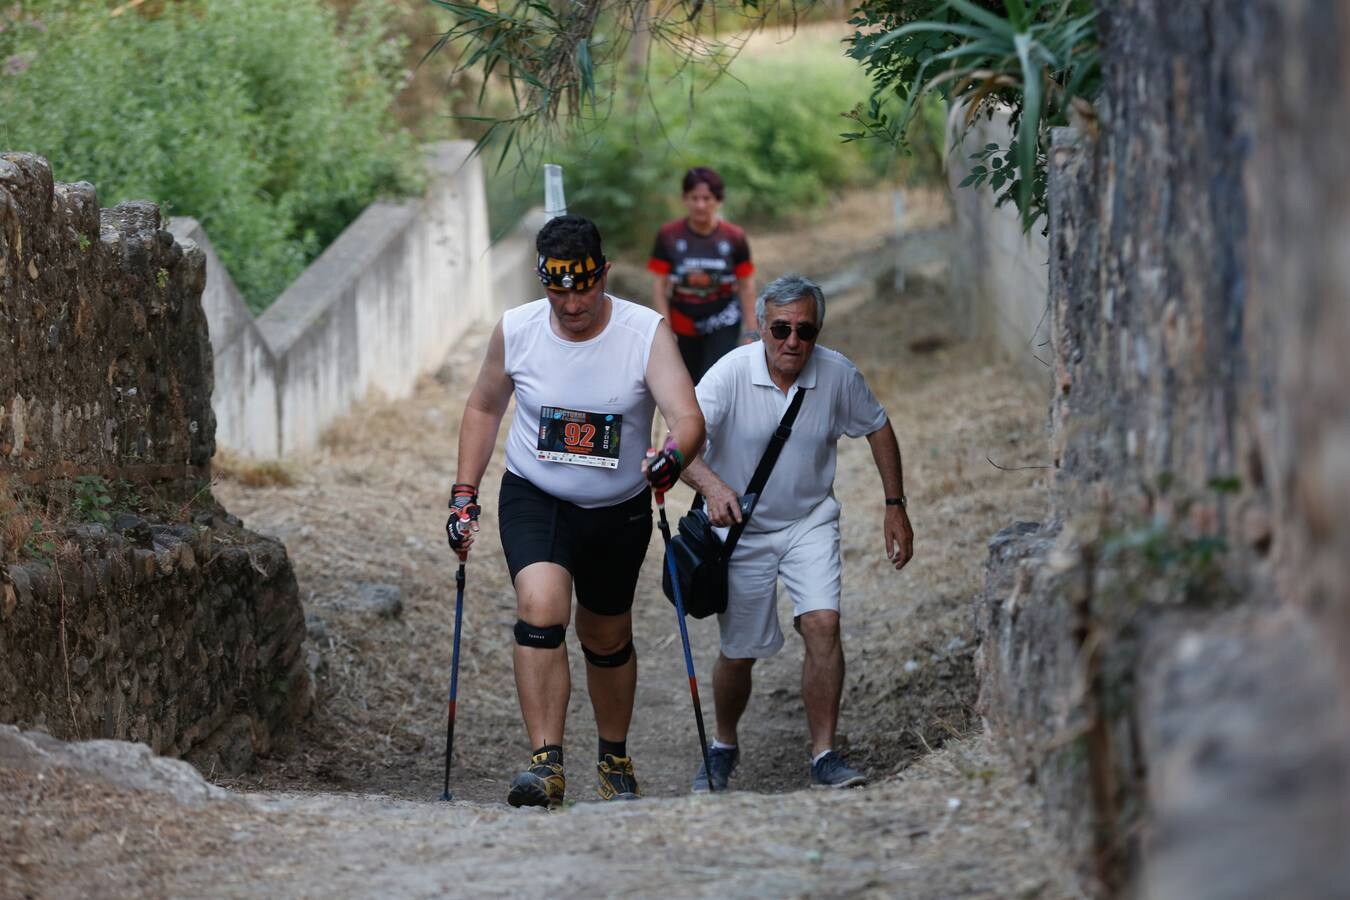 Mientras muchos granadinos pasaban el fin de semana en la playa, en la capital se celebró la III Carrera Nocturna de la Alhambra, parte de la Copa Andaluza de Marcha Nórdica, con cerca de 300 participantes sumando sus tres modalidades